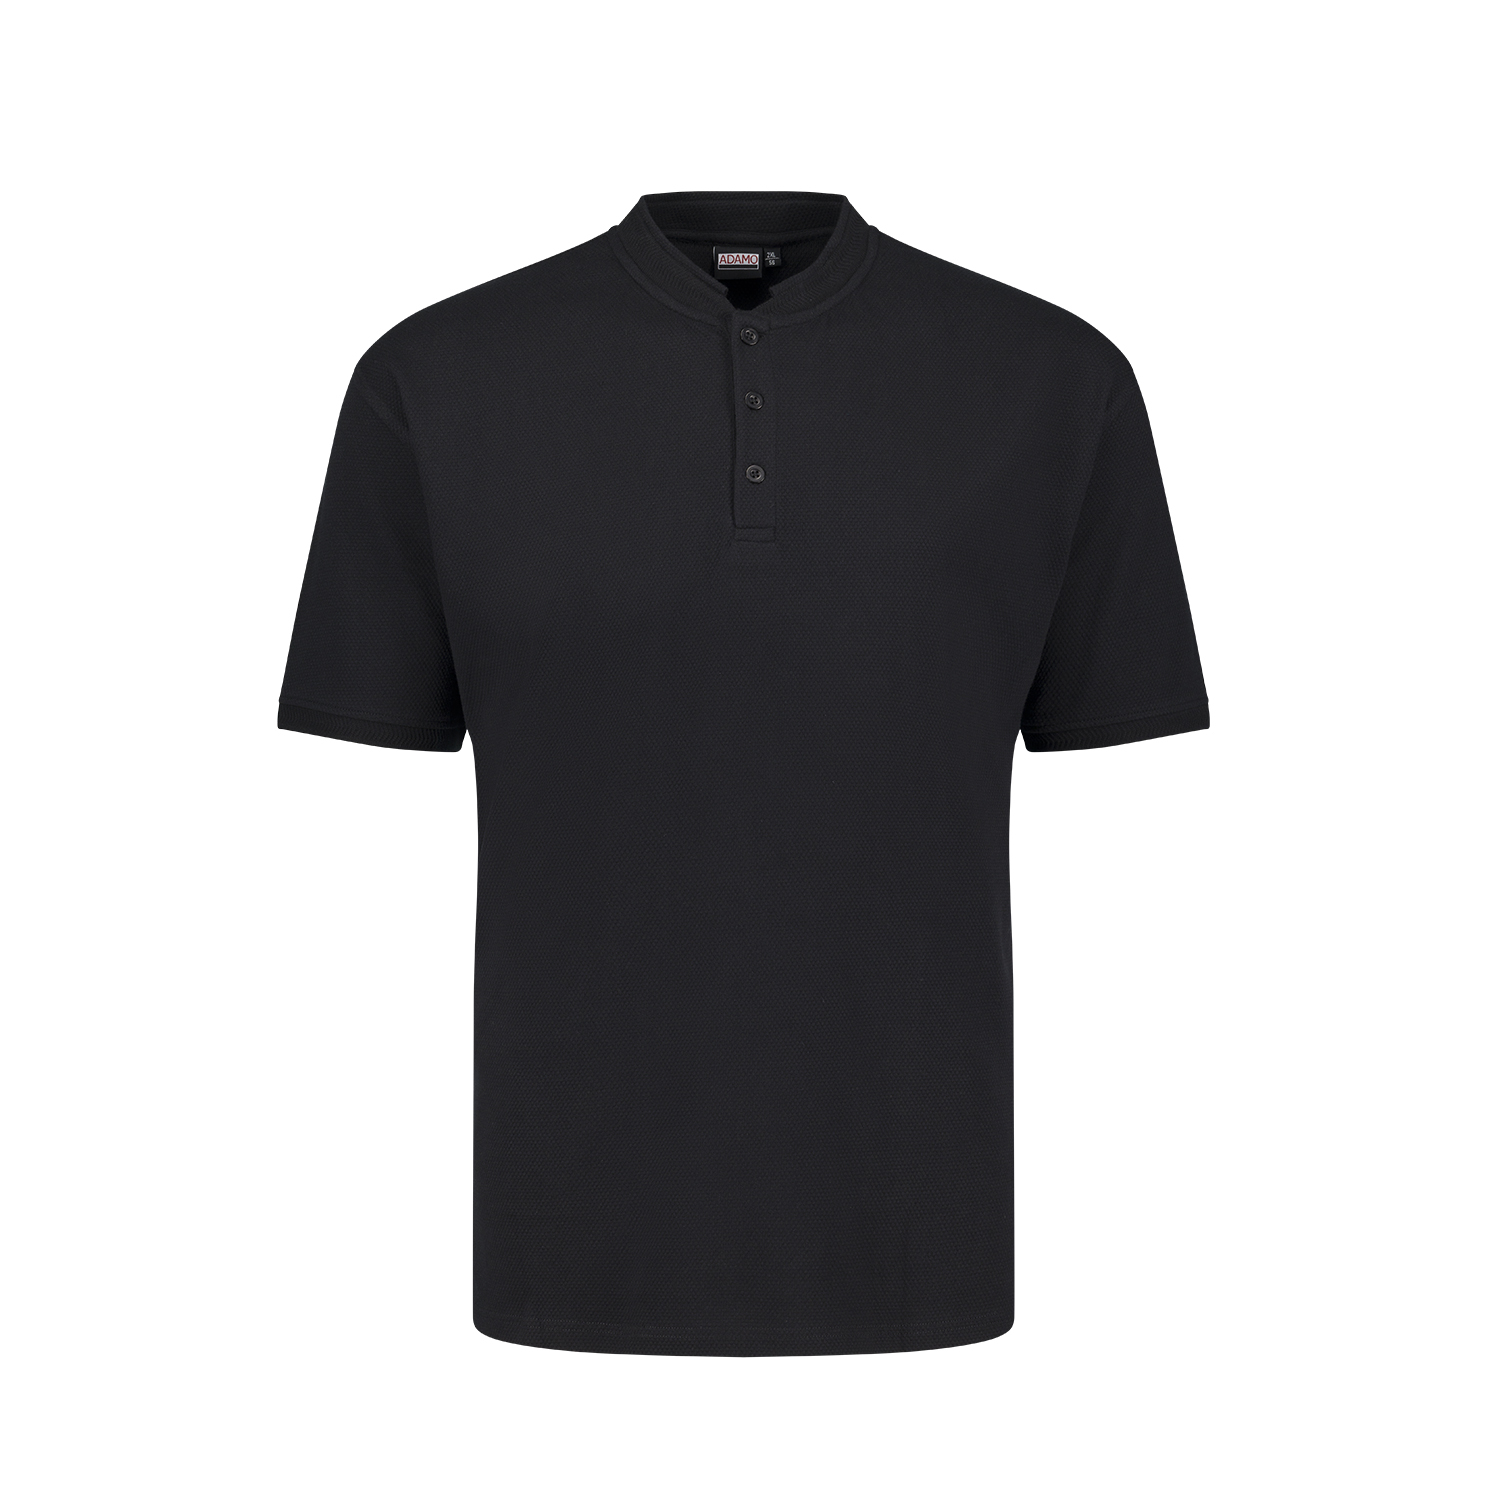 Herren Serafino T-Shirt aus Waffelpiqué schwarz REGULAR FIT von ADAMO Serie "Sam" in Übergrößen bis 10XL